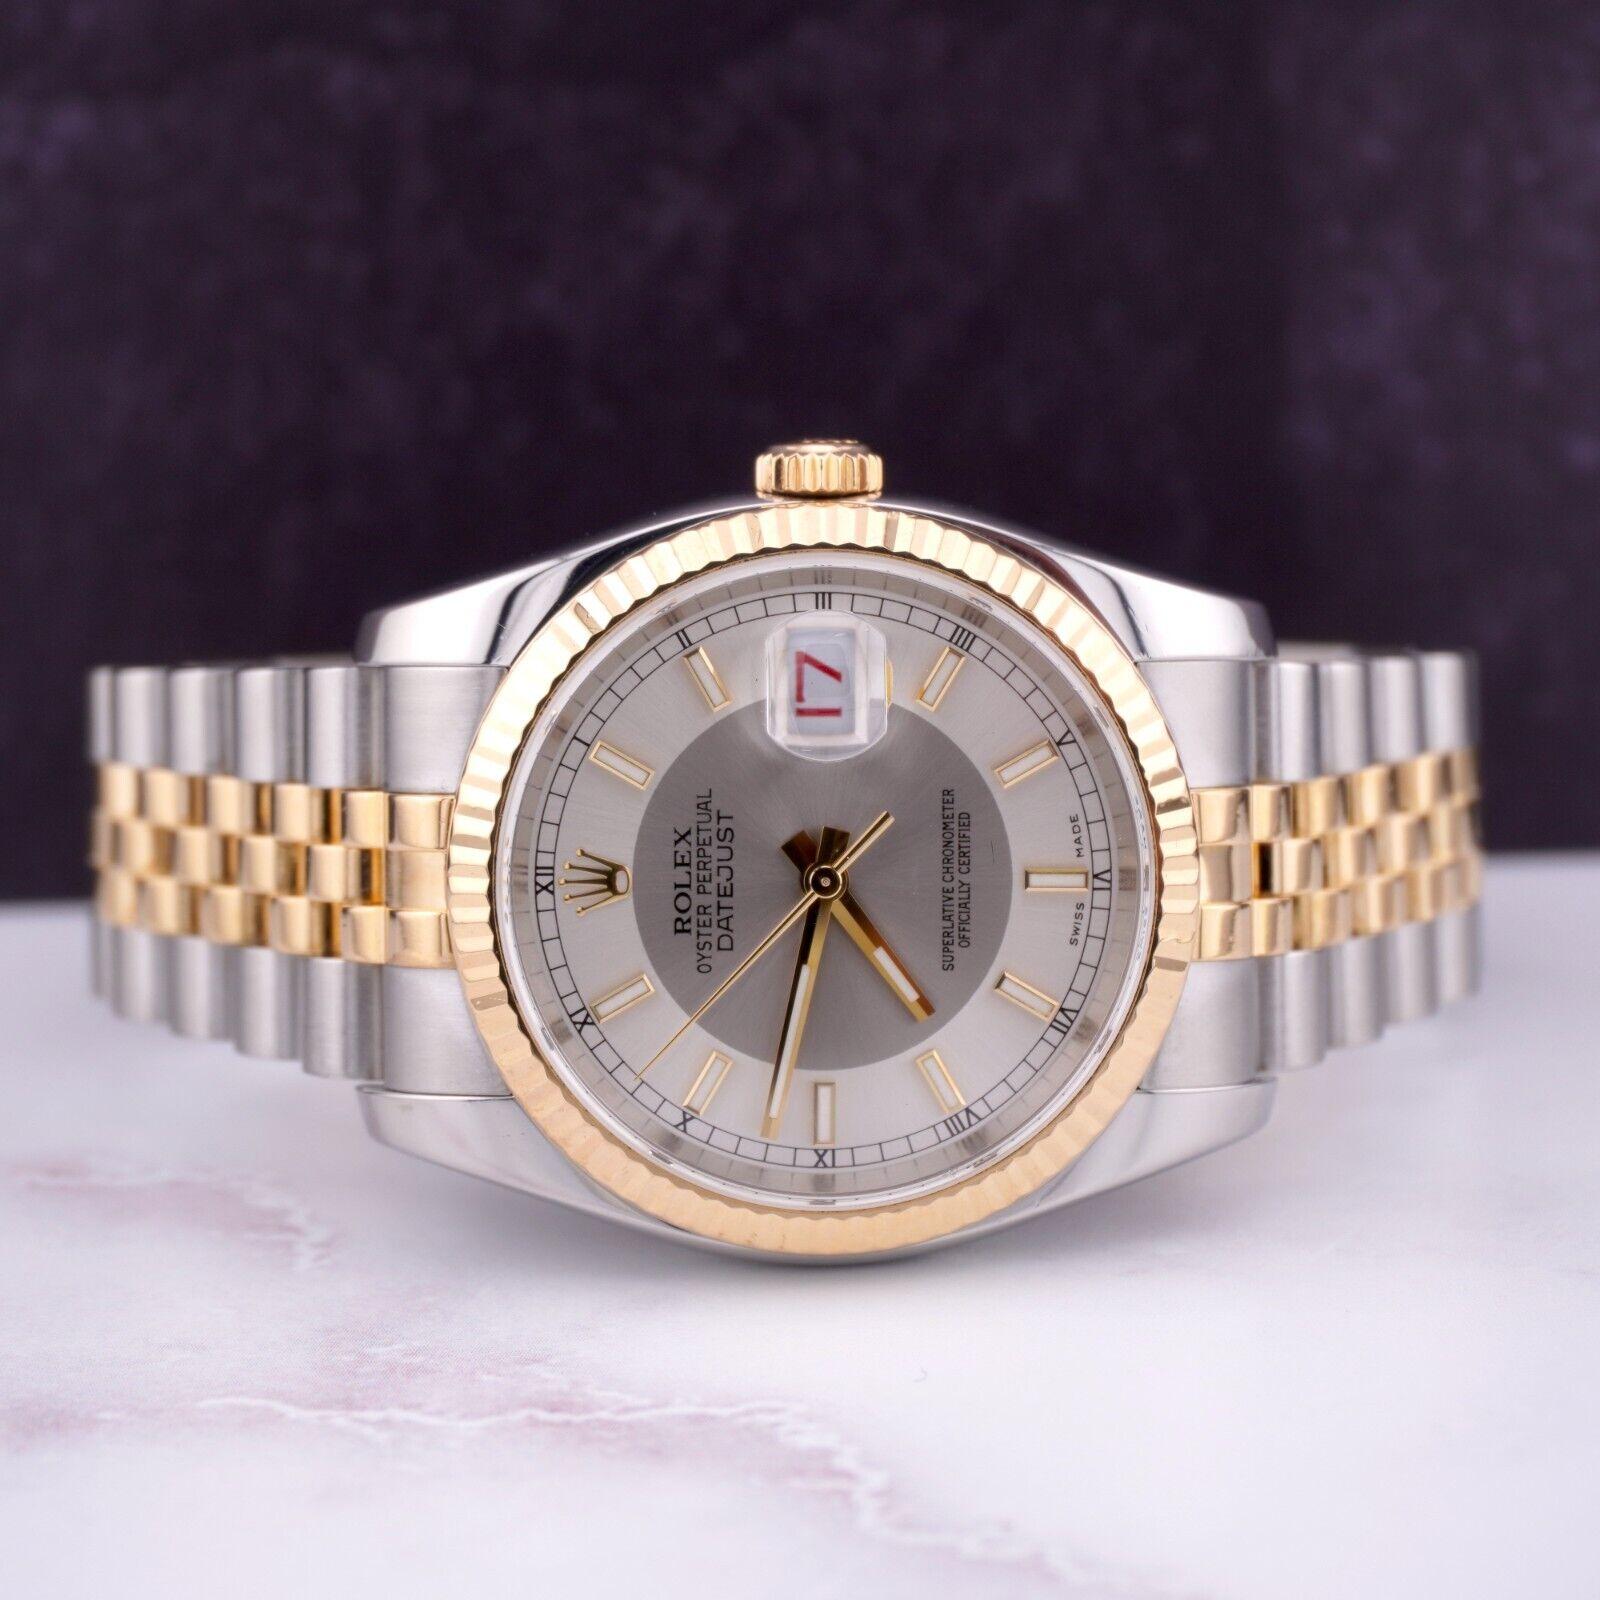 Rolex Datejust 36mm Uhr. Ein Pre-owned Uhr w / Geschenk-Box. Uhr ist 100% authentisch und kommt mit Echtheitskarte. Watch Reference ist 116233 und ist in ausgezeichnetem Zustand (siehe Bilder). Die Farbe des Zifferblatts ist Silver Tuxedo Dial. und